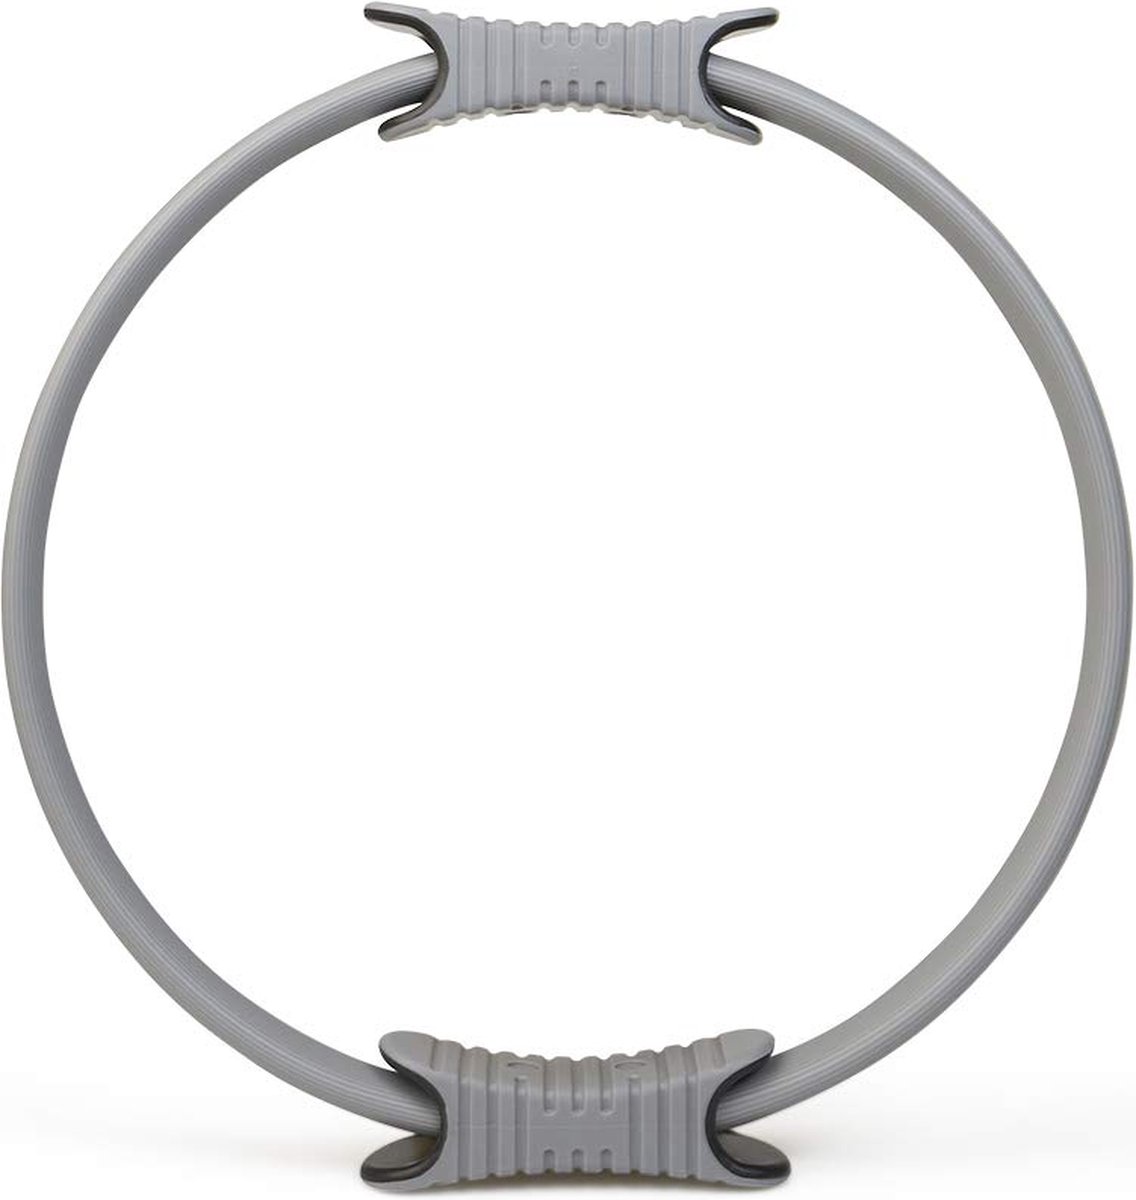 Pilates-ring met antislip handgrepen ter versterking van de bekkenbodem-, buik- en rugspieren, incl. poster met oefeningen